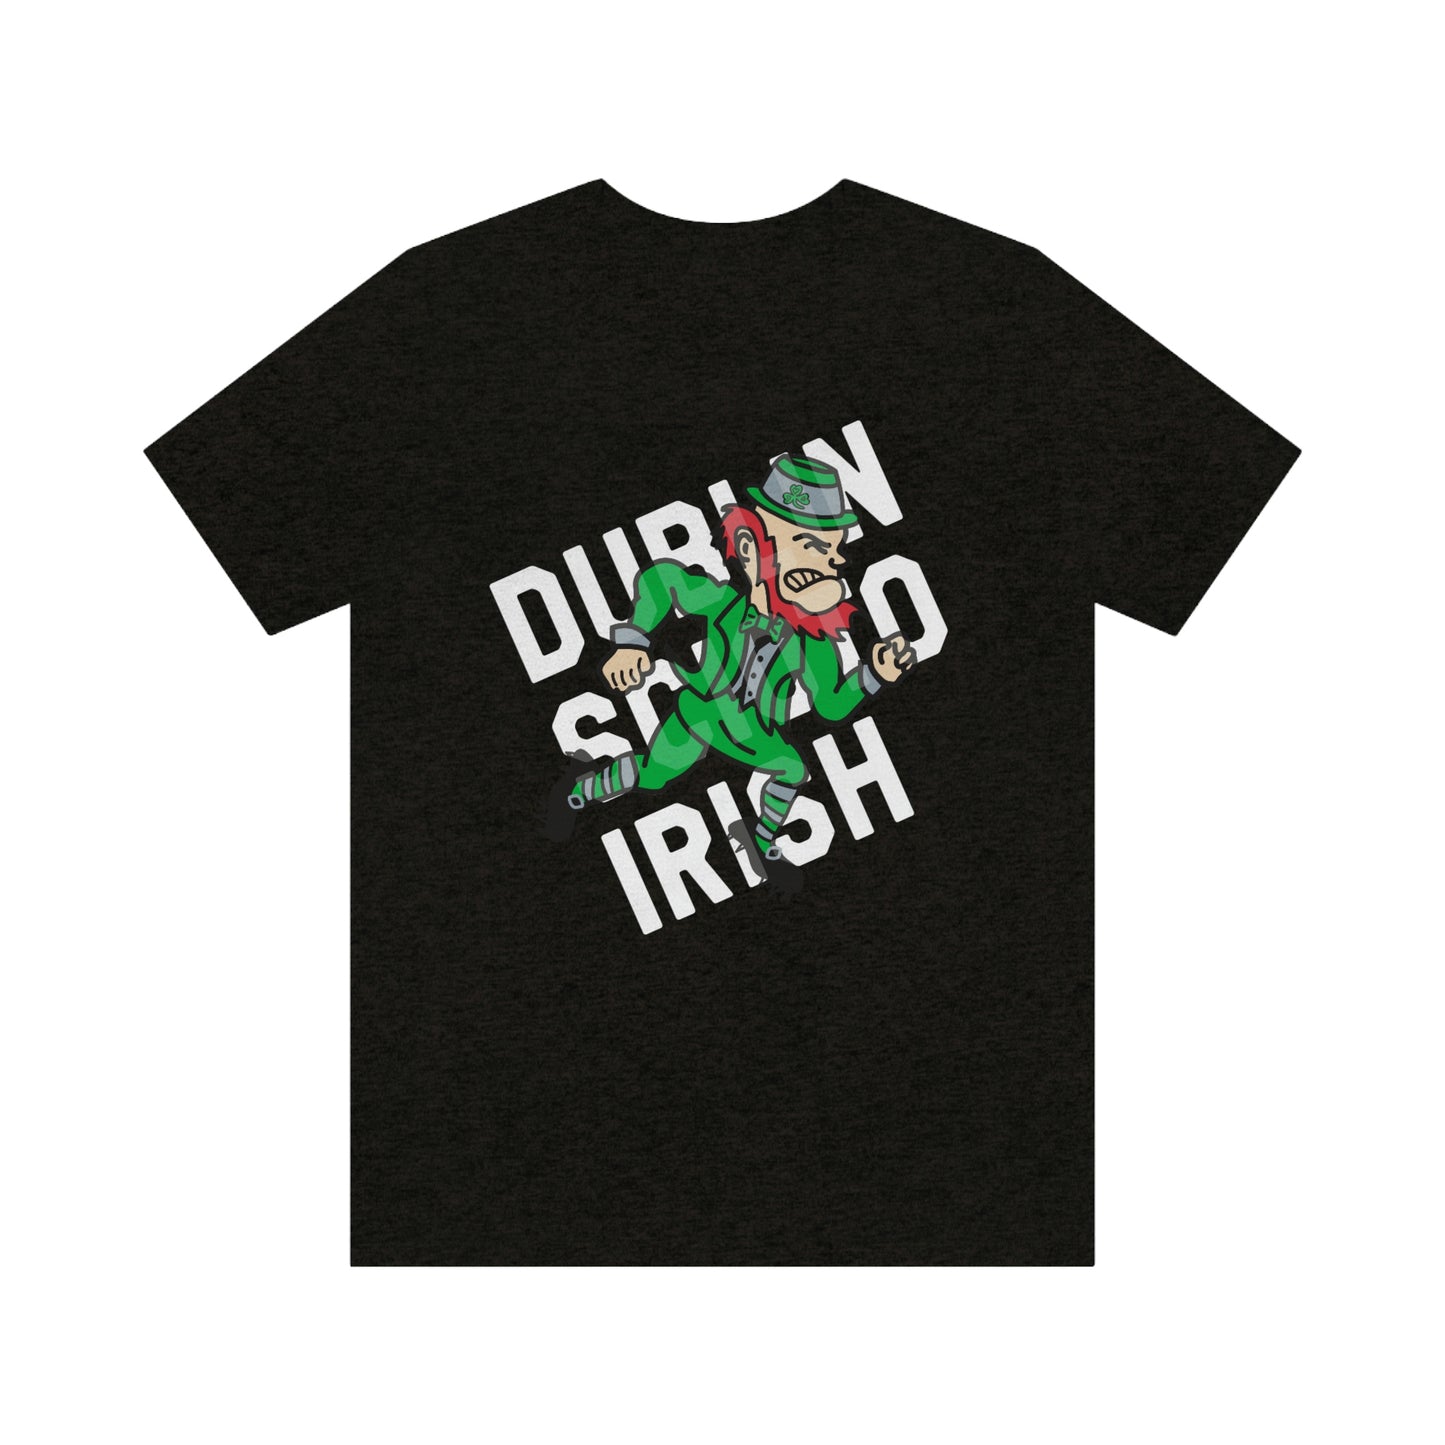 LEPRECHAUN_OVERPRINT_DUBLIN SCIOTO IRISH-Unisex Jersey Short Sleeve Tee